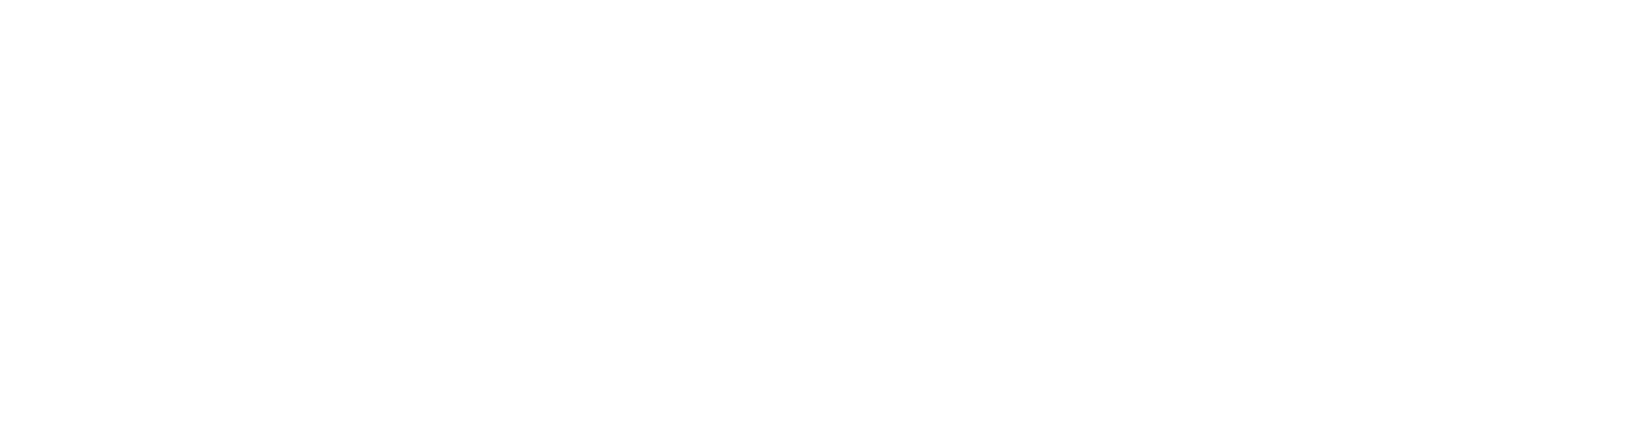 MSCI Logo groß für dunkle Hintergründe (transparentes PNG)